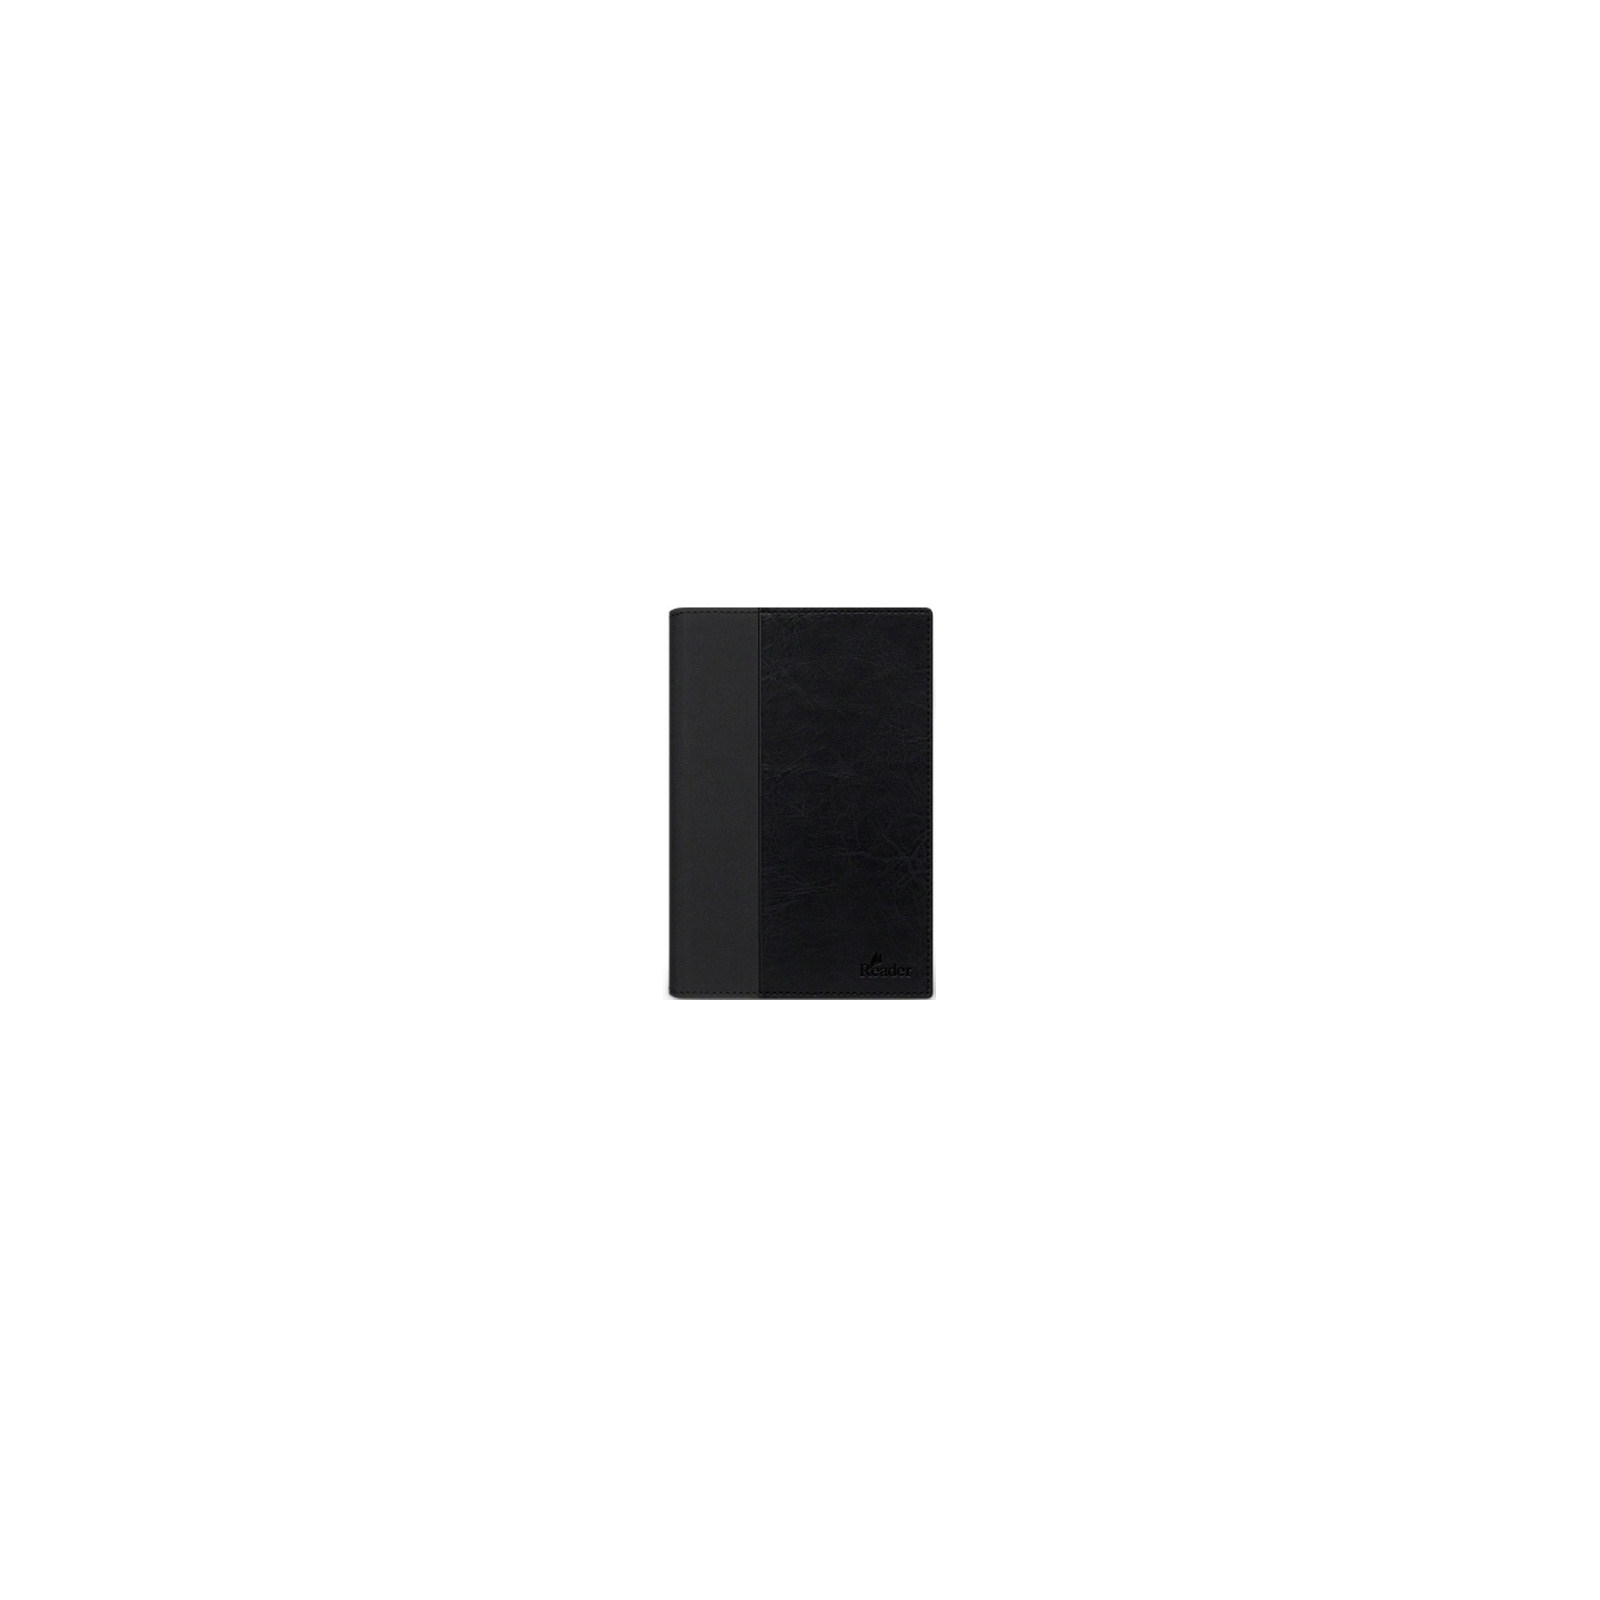 Чехол для электронной книги Sony SC22B black для PRS-T2 (PRSASC22B.WW)